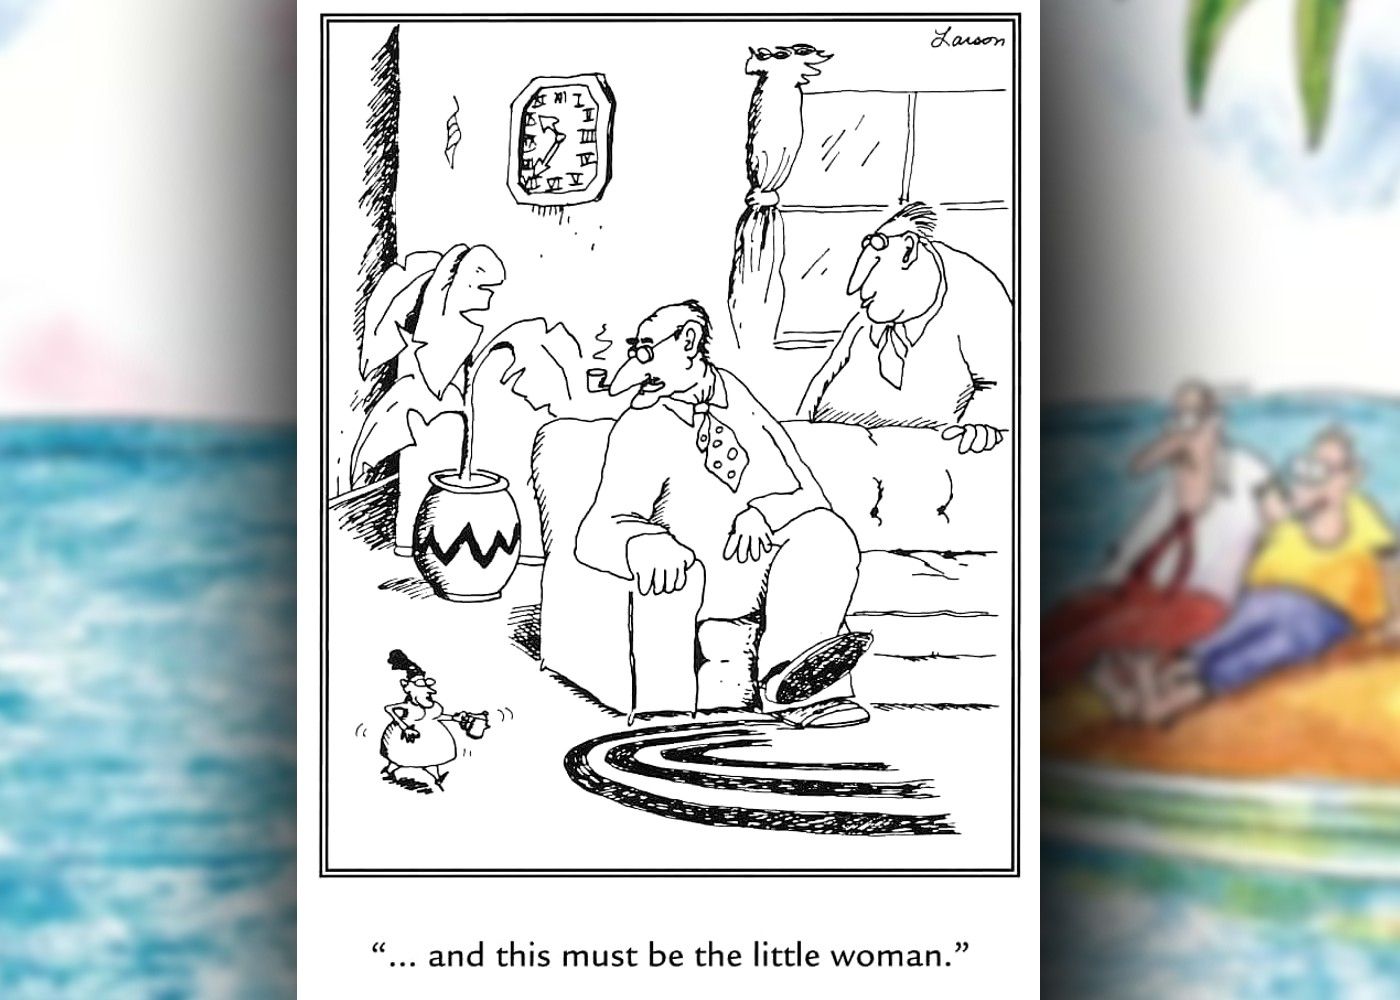 a história em quadrinhos do outro lado onde o termo 'a pequena mulher' é literal